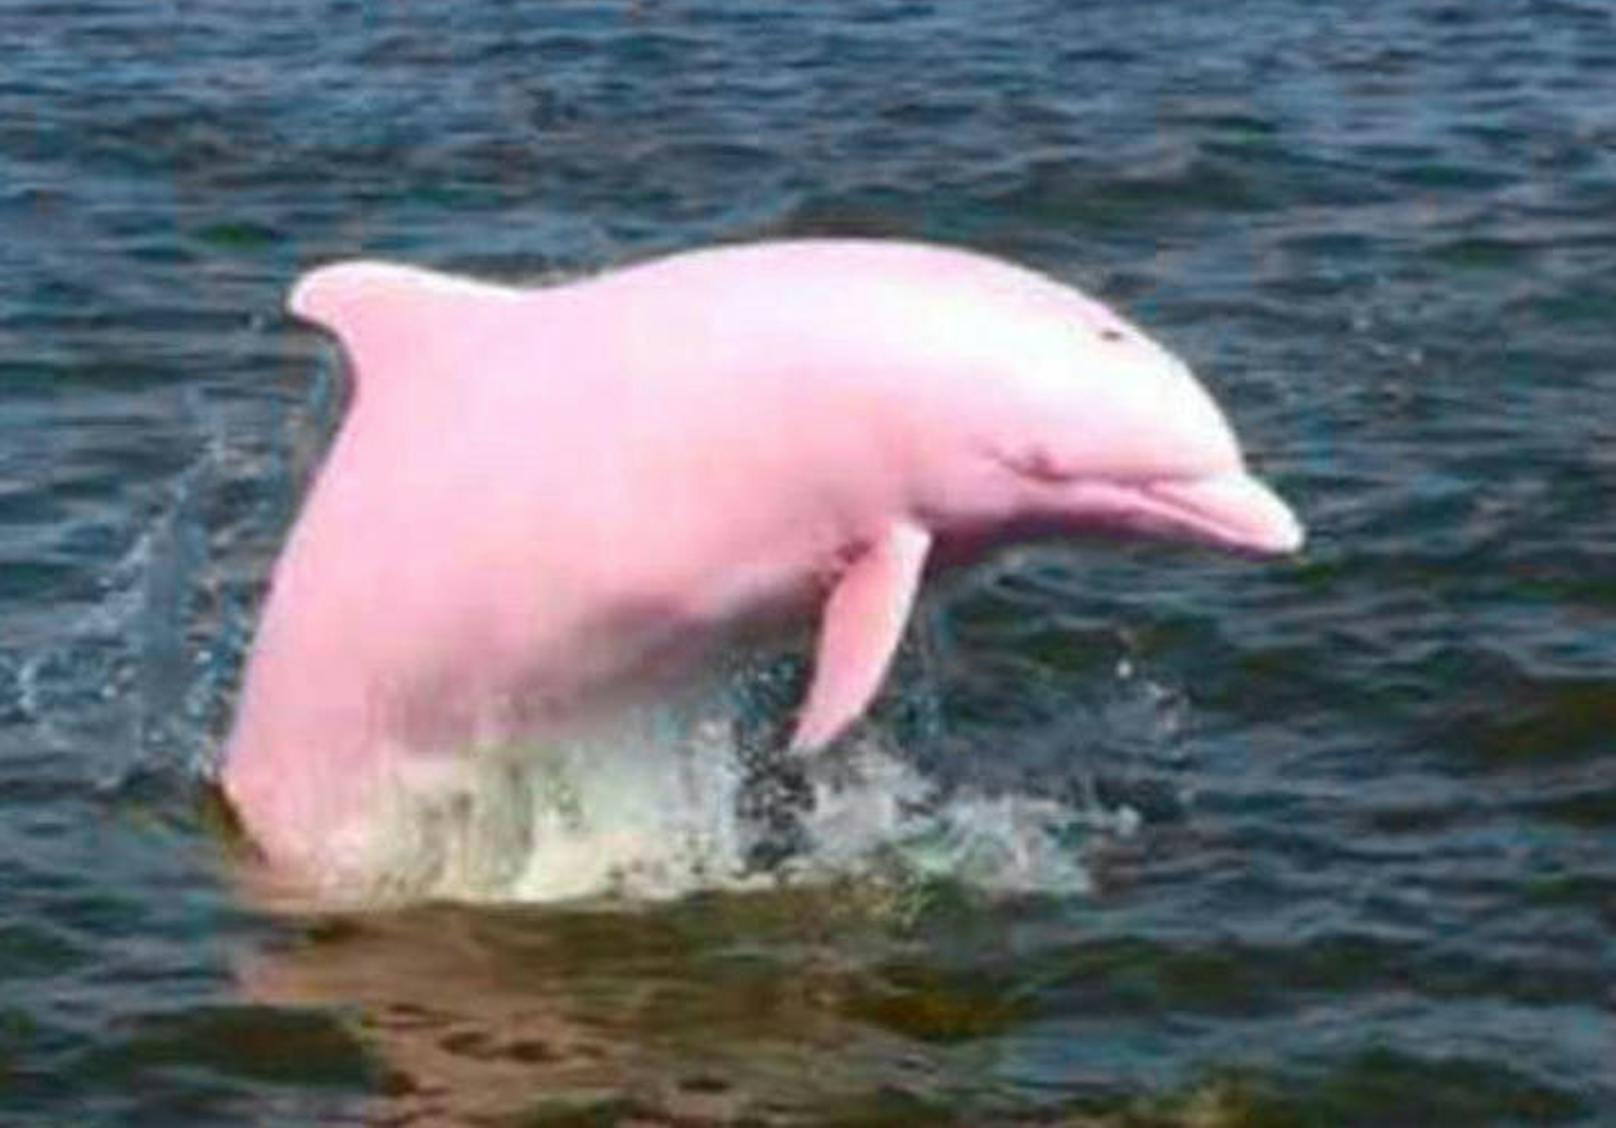 Anders bei Pinky, dem rosa Delfin. Er verdankt seine Hautfarbe höchstwahrscheinlich einem Gendefekt, der bei ihm Albinismus ausgelöst hat.
<b>Mehr Infos: </b> <a href="https://www.heute.at/timeout/virale_videos/story/Fotos-Rosa-Pinker-Delfin-Pinky-USA-Louisiana-46999140" target="_blank">Und plötzlich taucht ein pinkfarbener Delfin auf</a>